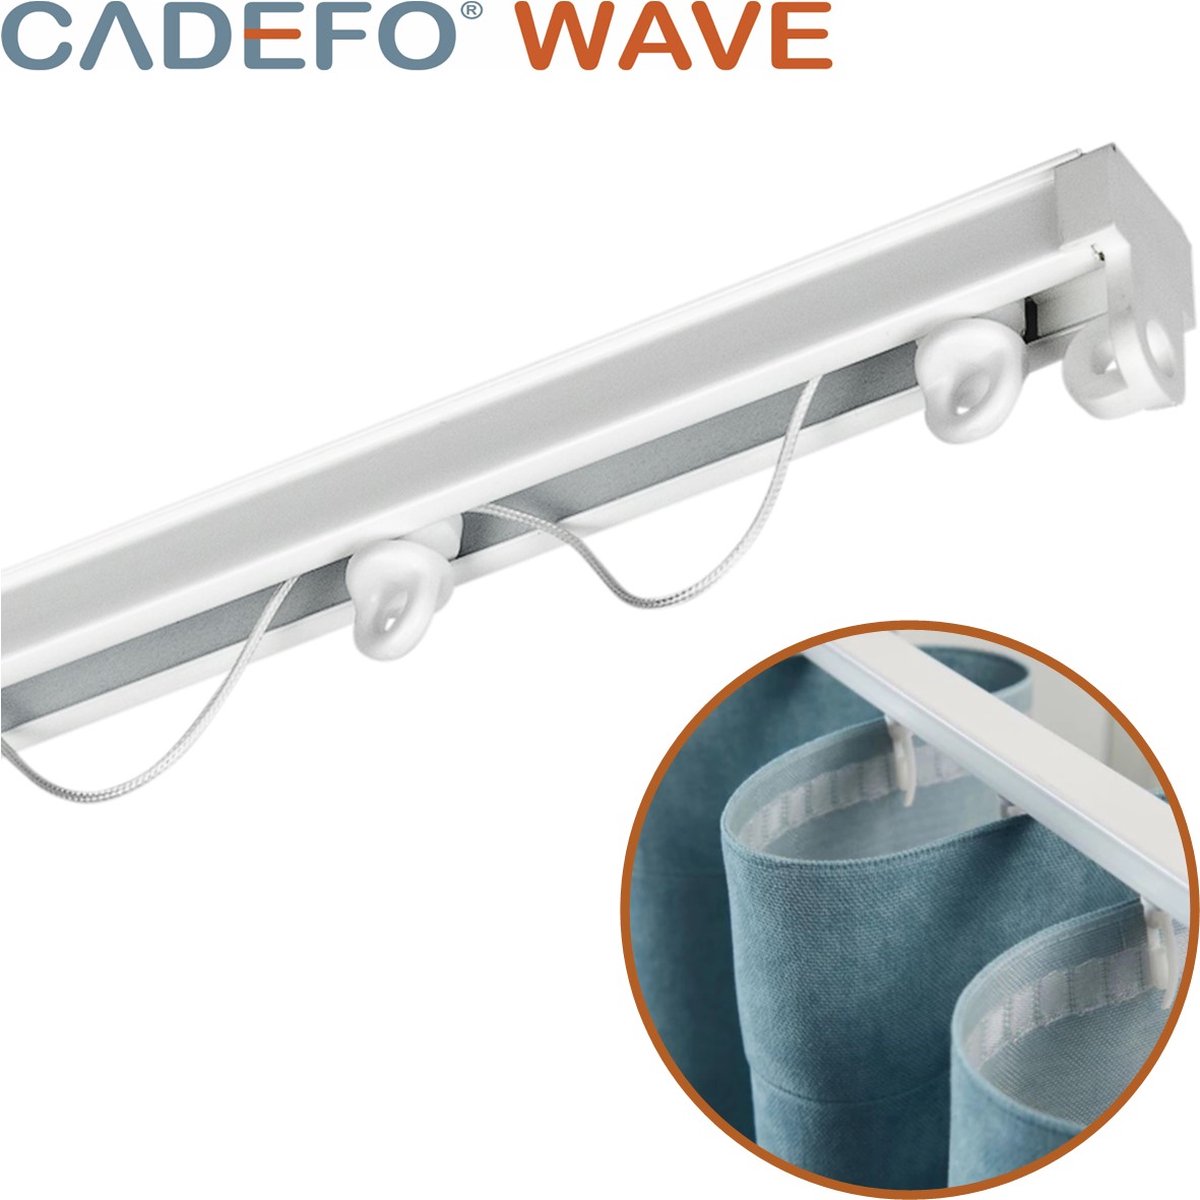 CADEFO WAVE (351 - 400 cm) Gordijnrails - Compleet op maat! - UIT 1 STUK - Leverbaar tot 6 meter - Plafondbevestiging - Lengte 399 cm